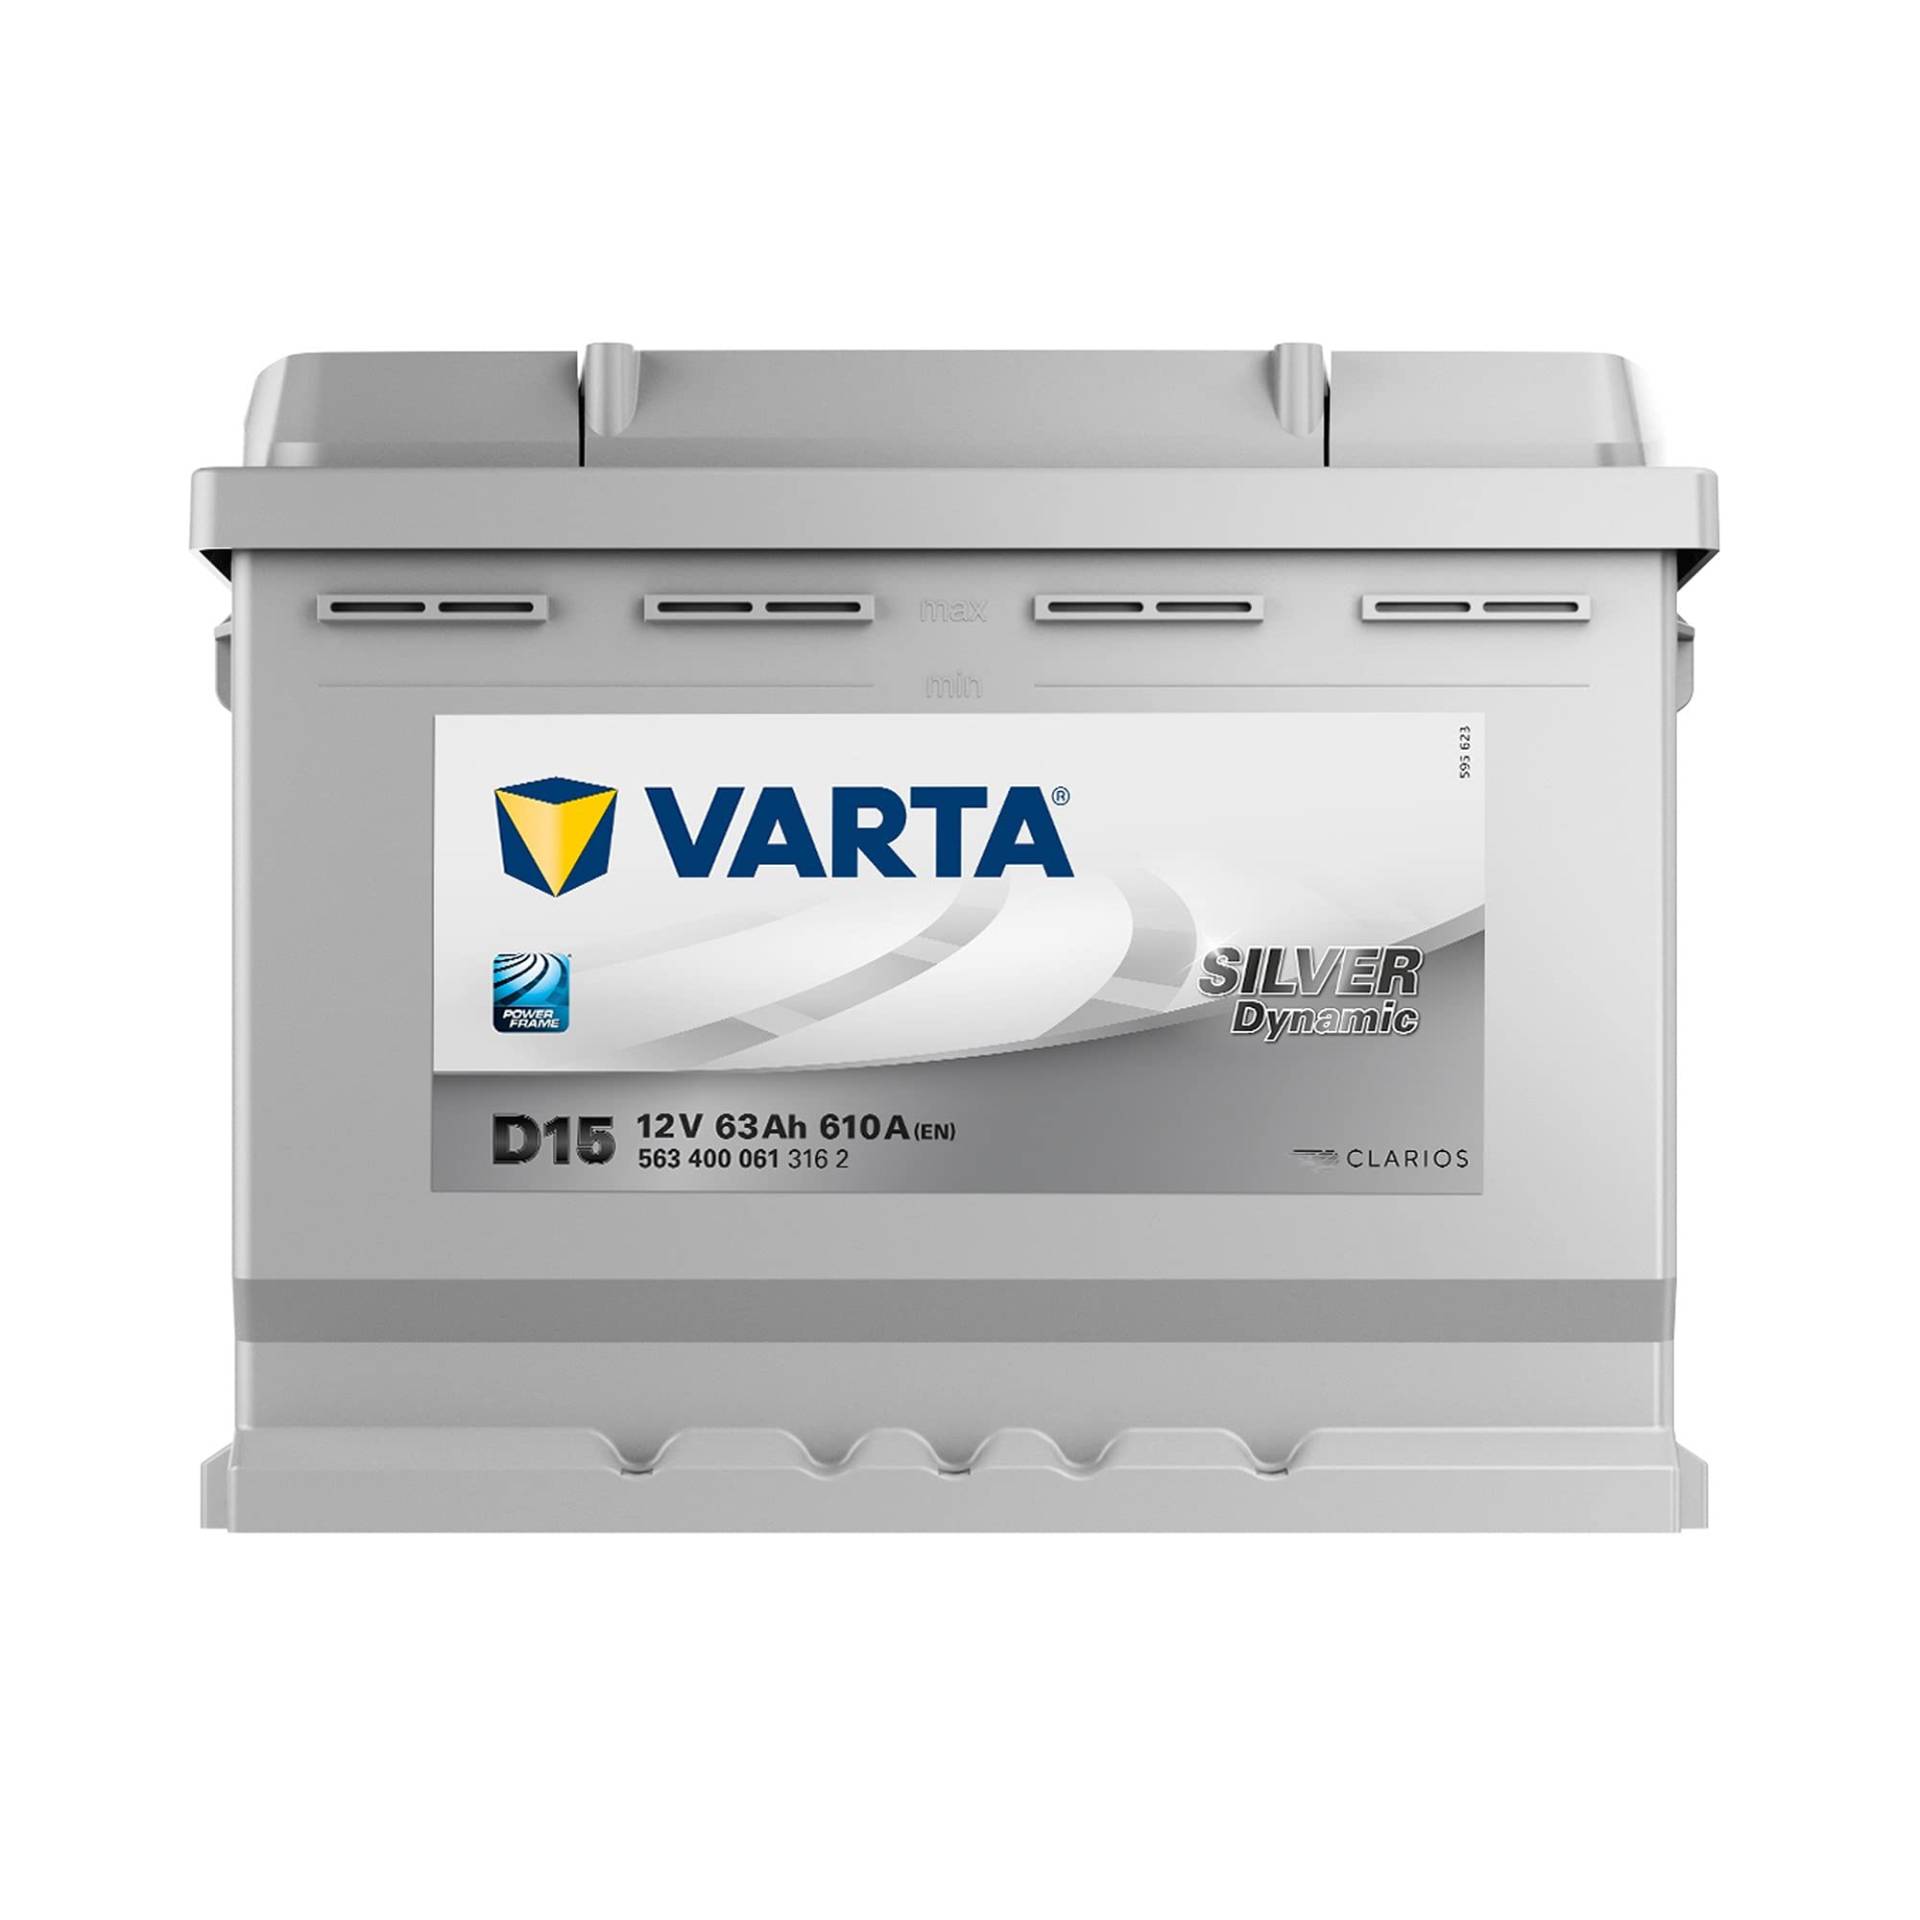 Varta Silver Dynamic 563 400 061 Autobatterien, D15, 12 V, 63 Ah, 610 A von Varta